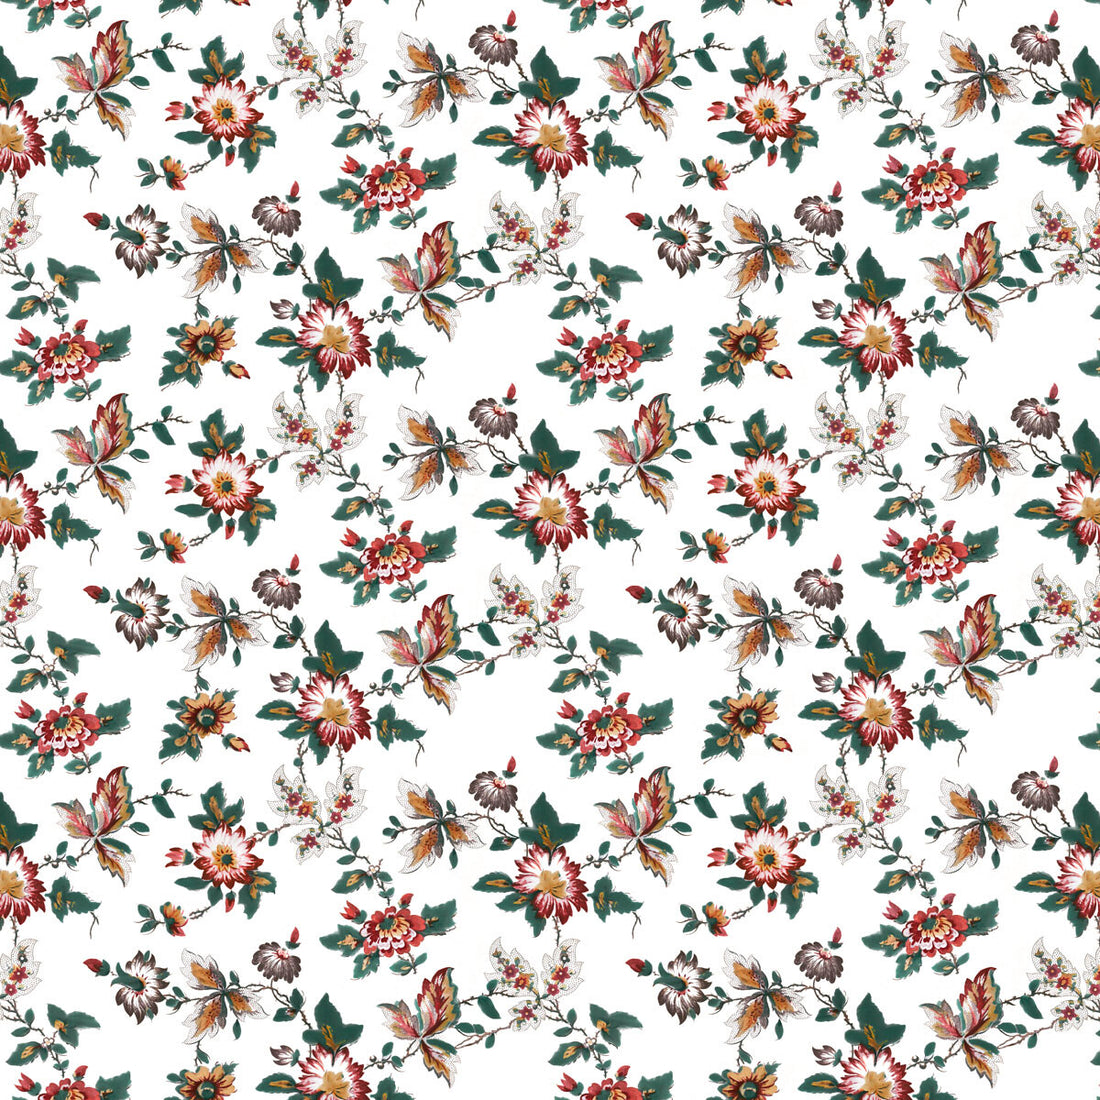 Brigitta fabric in rojo color - pattern LCT1070.001.0 - by Gaston y Daniela in the Lorenzo Castillo VI collection